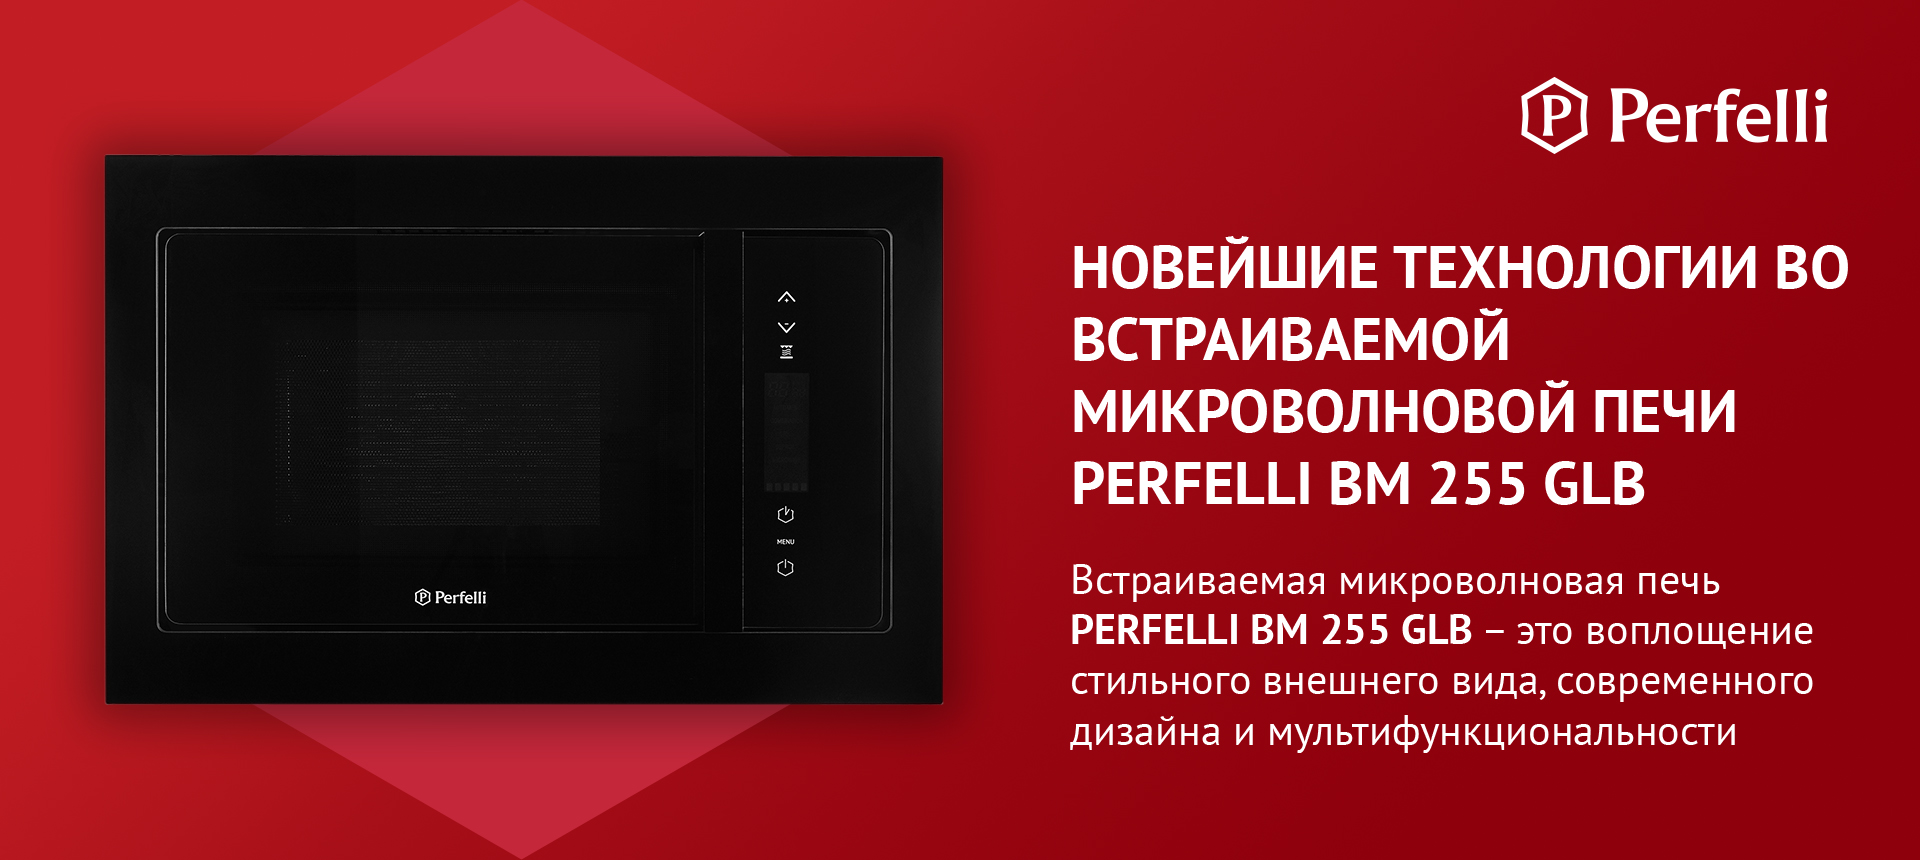 Встраиваемая микроволновая печь Perfelli BM 255 GLB — это воплощение стильного внешнего вида, современного дизайна и мультфункциональности